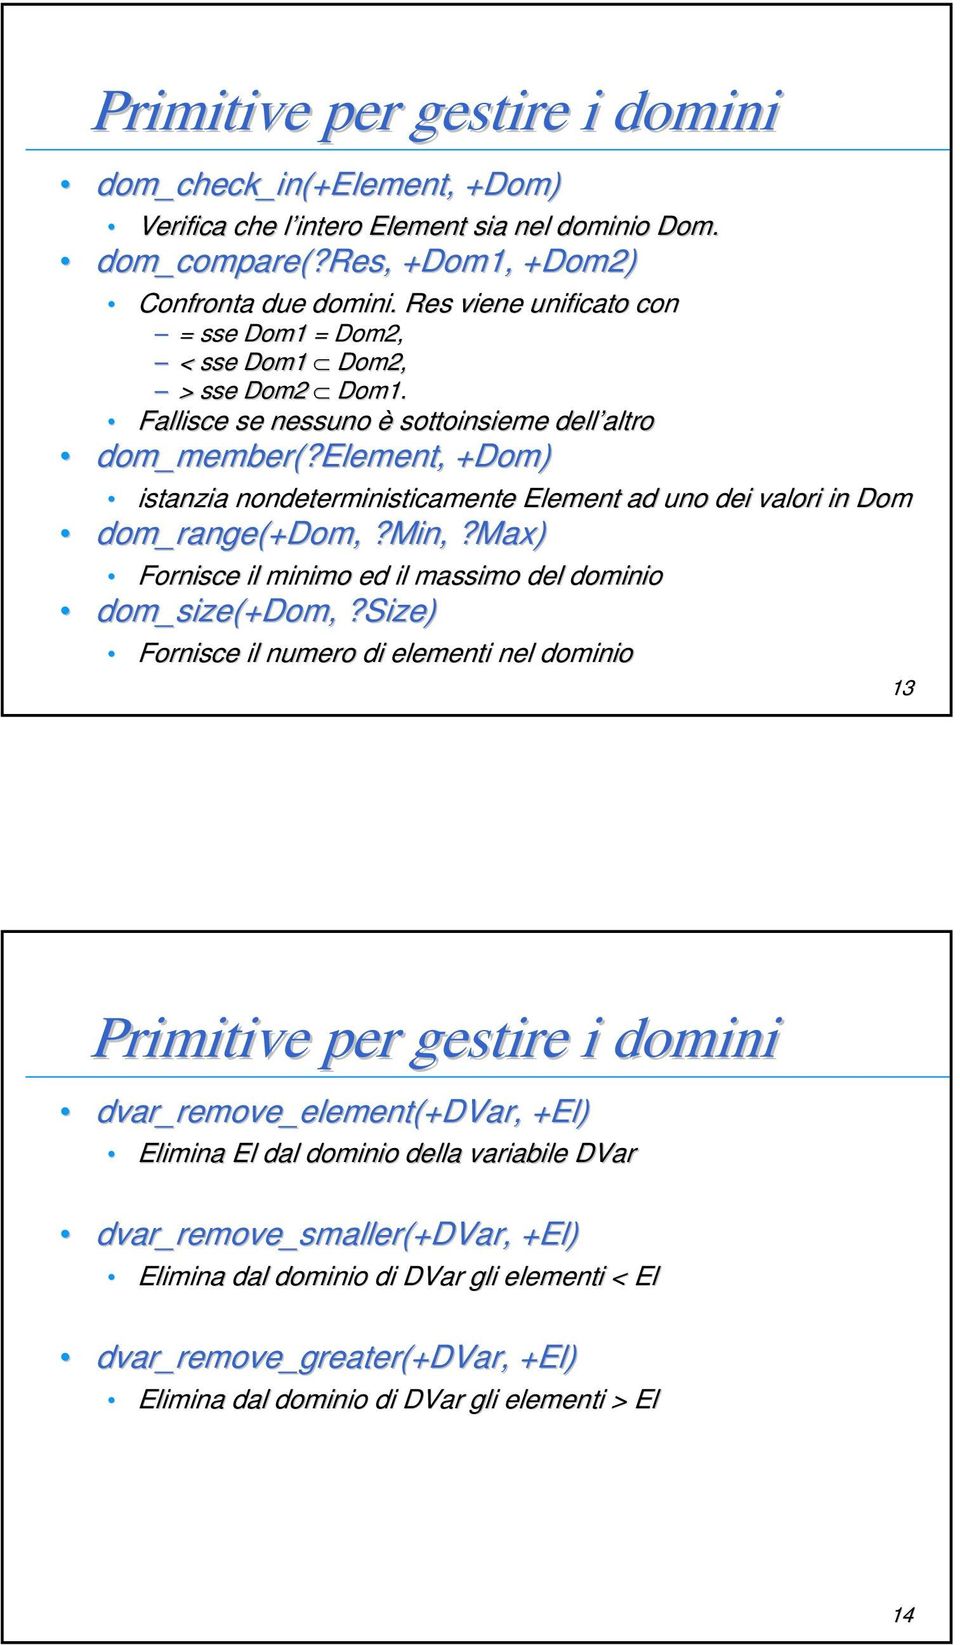 Element, +Dom) istanzia nondeterministicamente Element ad uno dei valori in Dom dom_range(+dom +Dom,,?Min? Min,,?Max) Fornisce il minimo ed il massimo del dominio dom_size(+dom,?